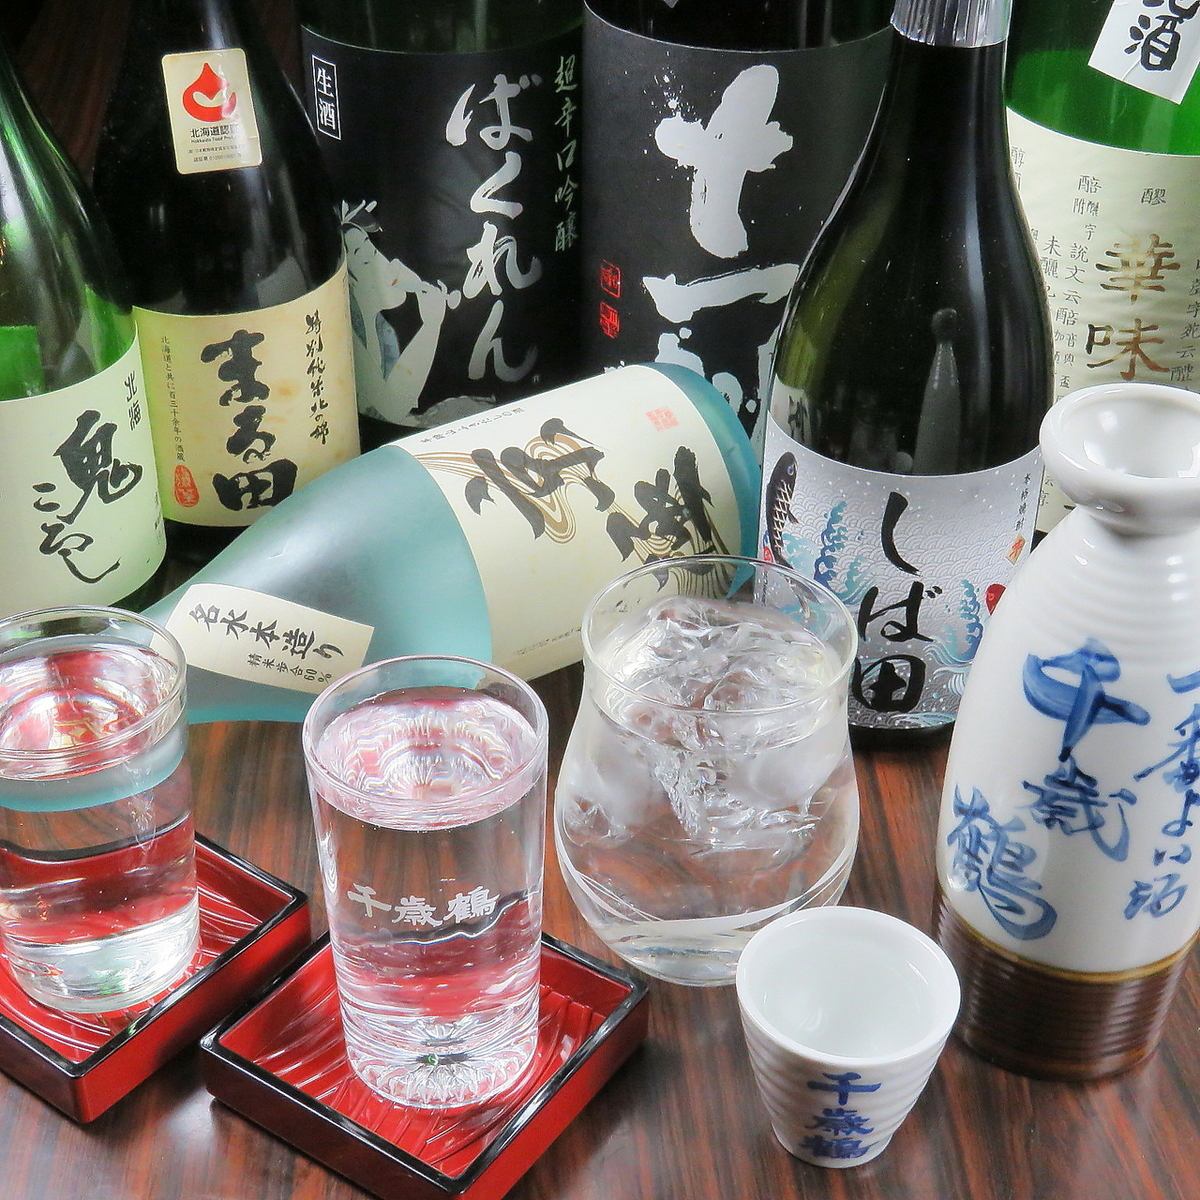 品尝各种当地酒和日本酒，以及从小樽渔港直送的新鲜海鲜。